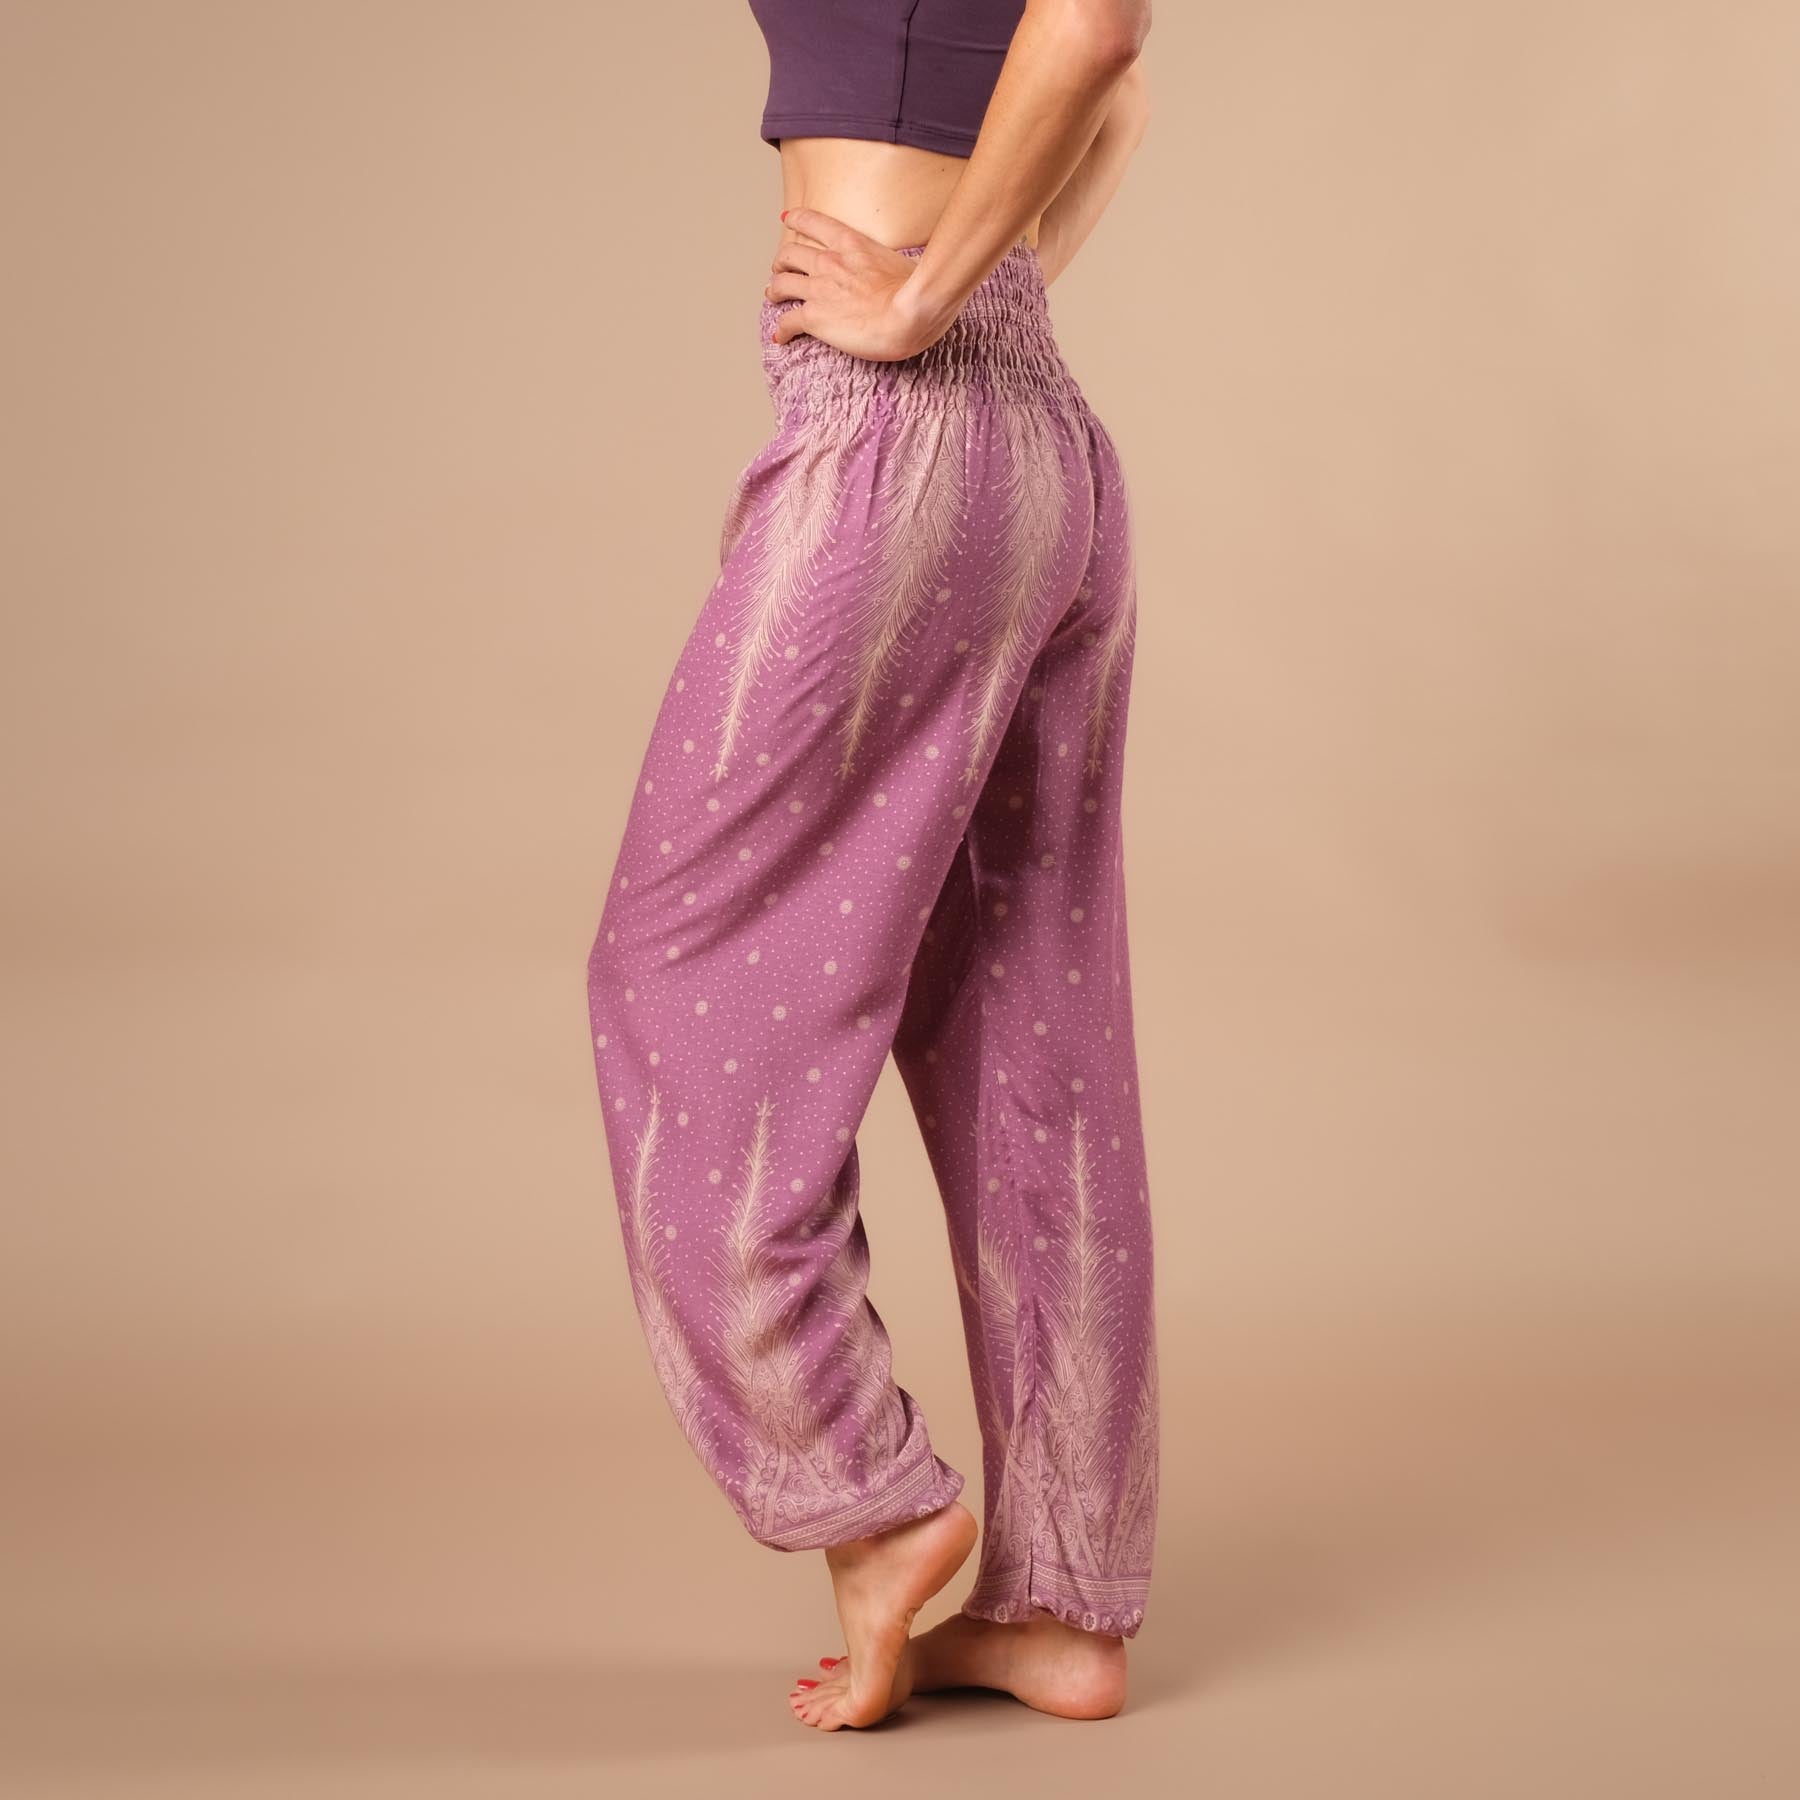 pantalon de harem, sarouel pour le yoga et les loisirs bohème violet